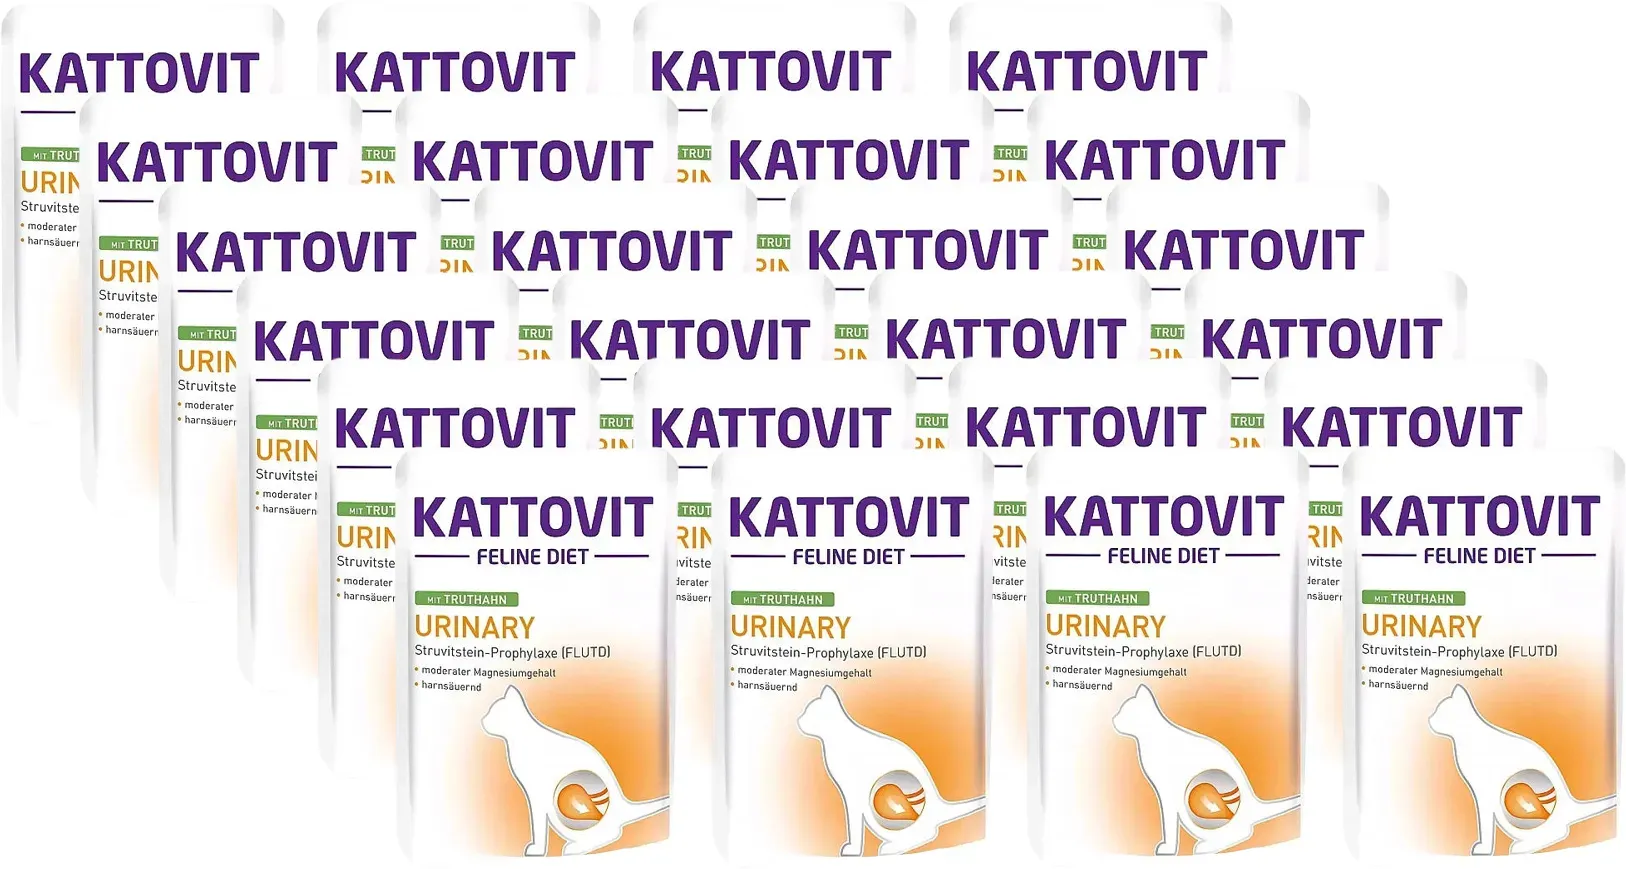 Kattovit Urin-Truthahn 24x85g-Beutel (Rabatt für Stammkunden 3%)